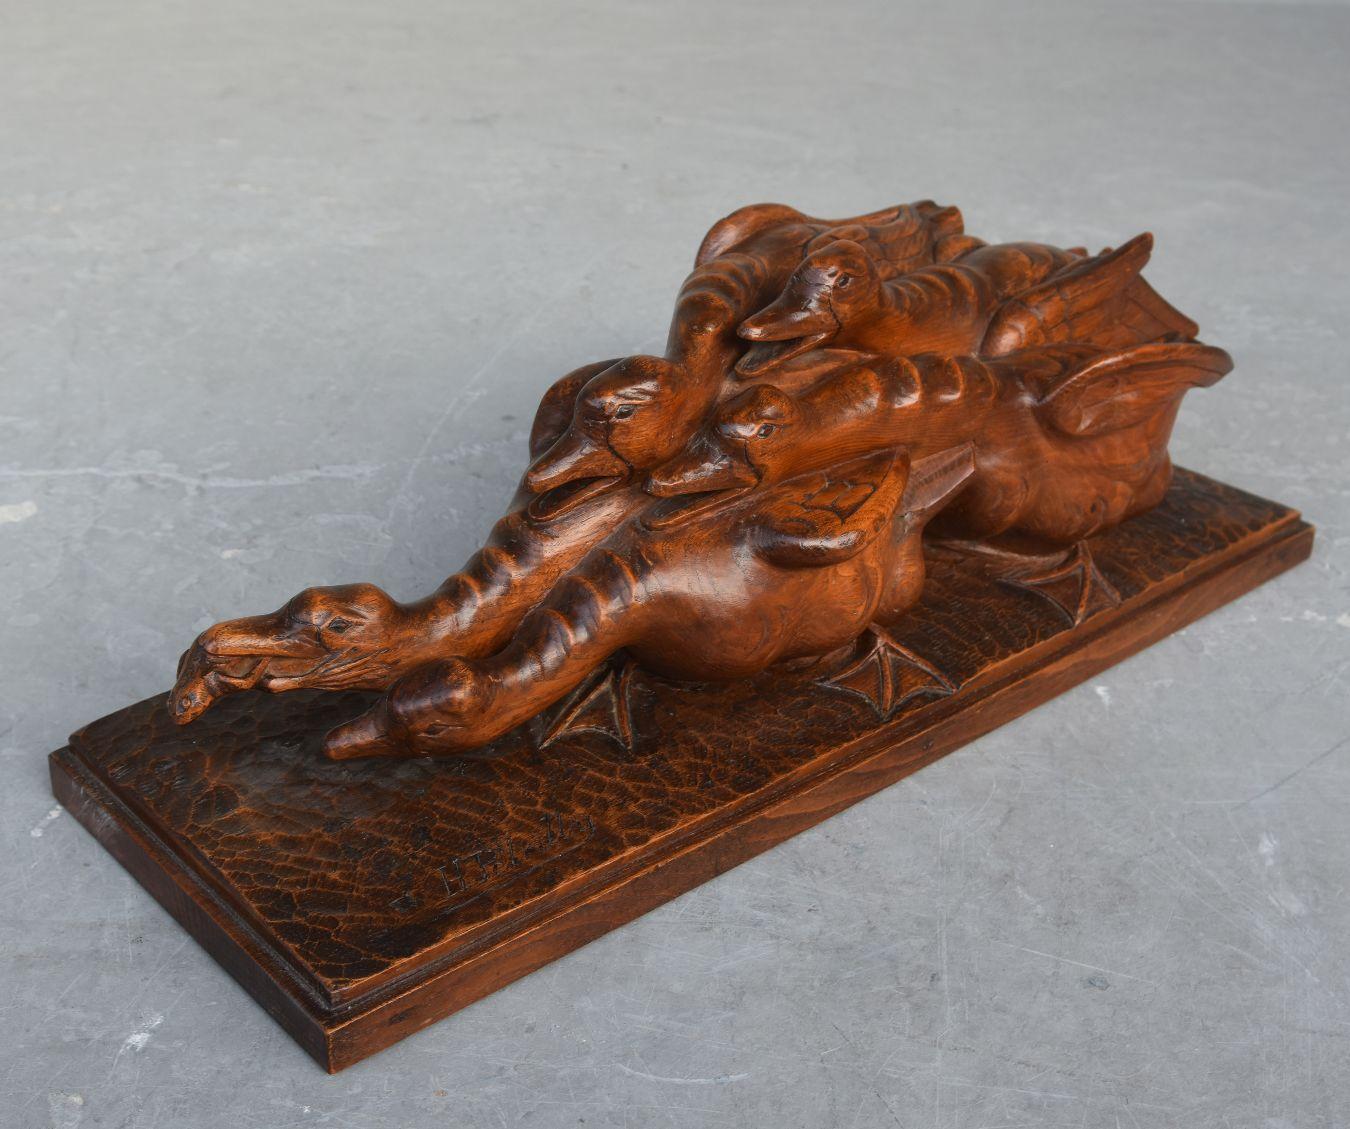 holzskulptur aus den 1930er Jahren, die Gänse darstellt, die um einen Frosch kämpfen, von H. Petrilly.